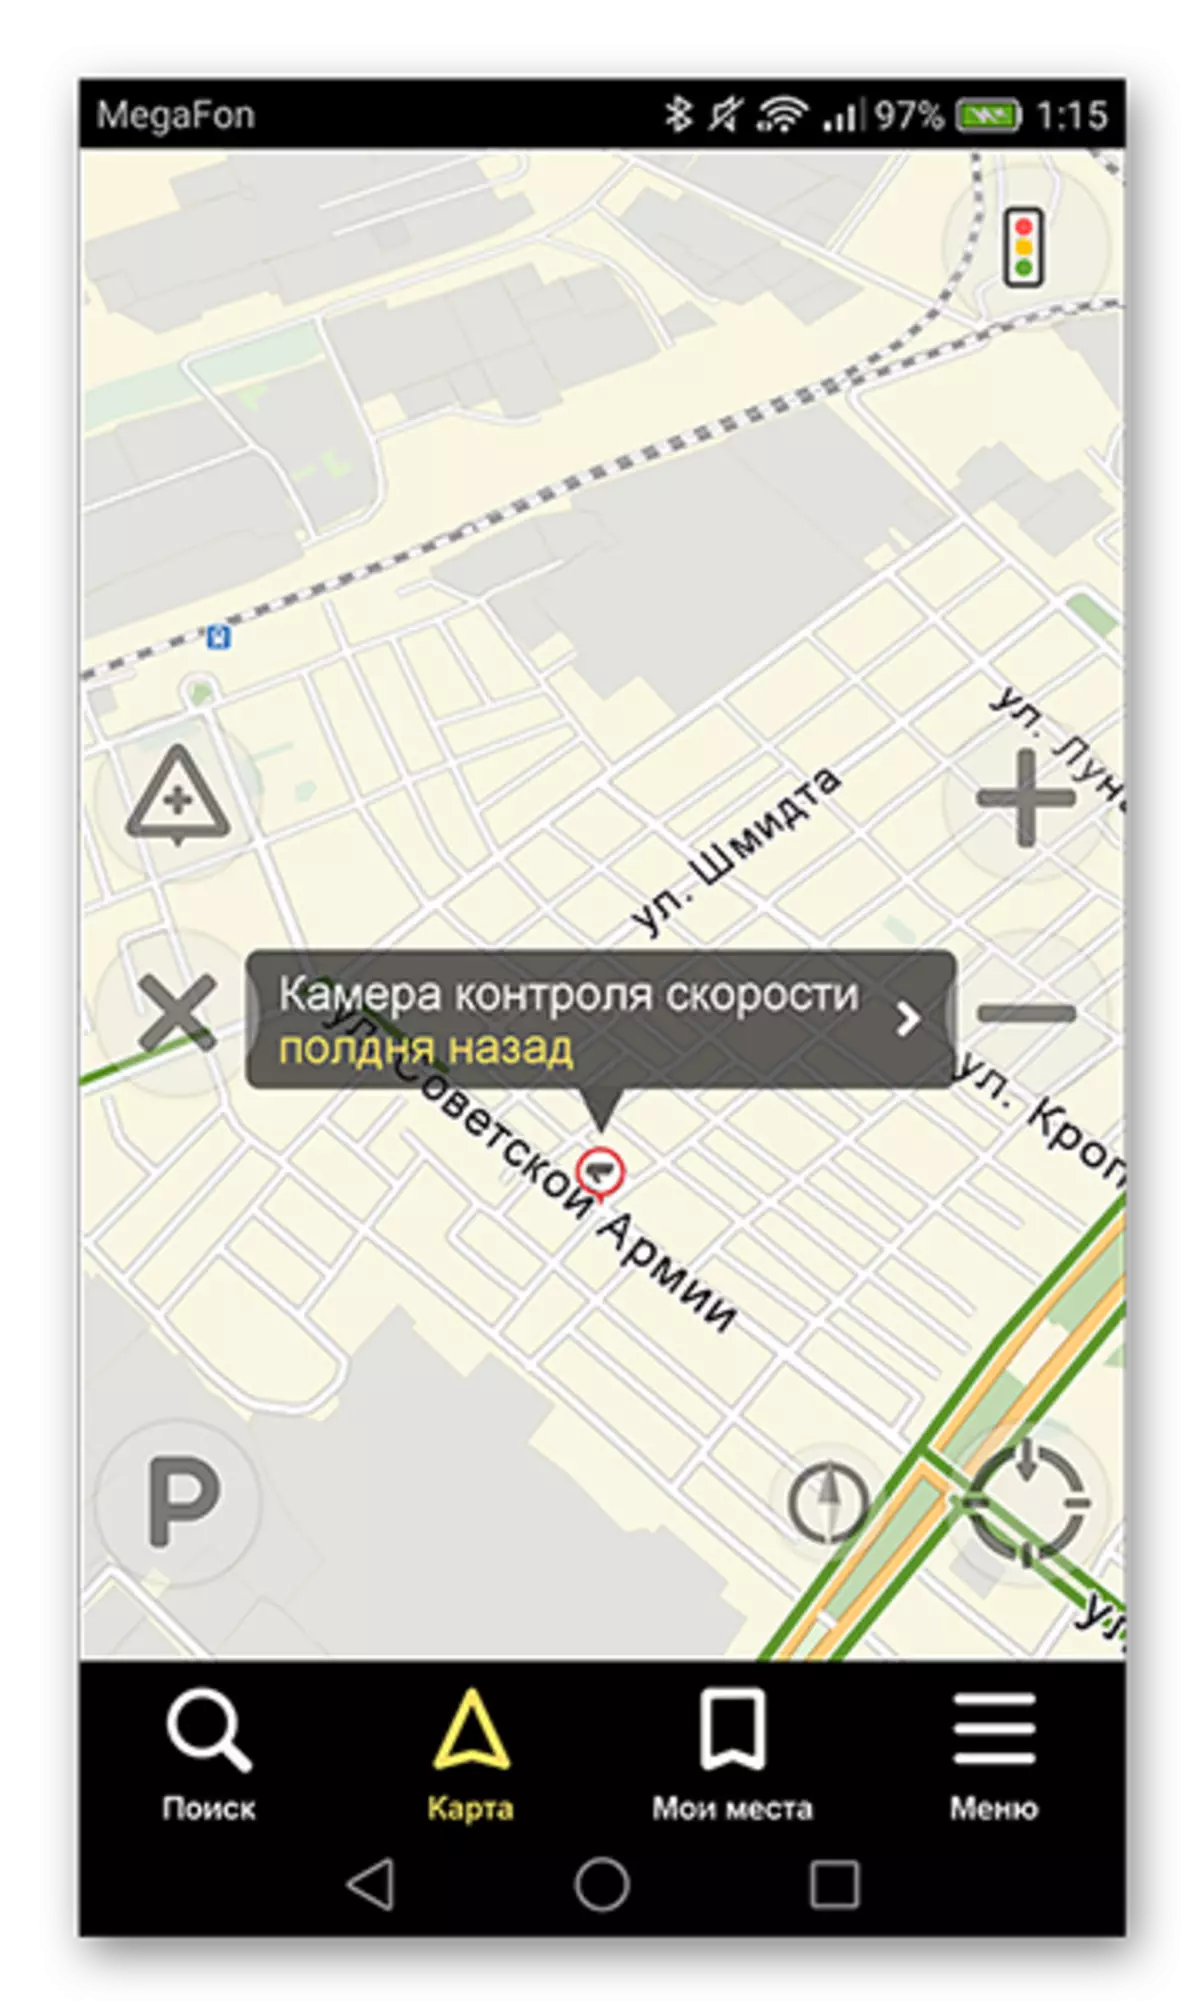 Avveniment installat fit-triq fil-Yandex. Applikazzjoni Navigator